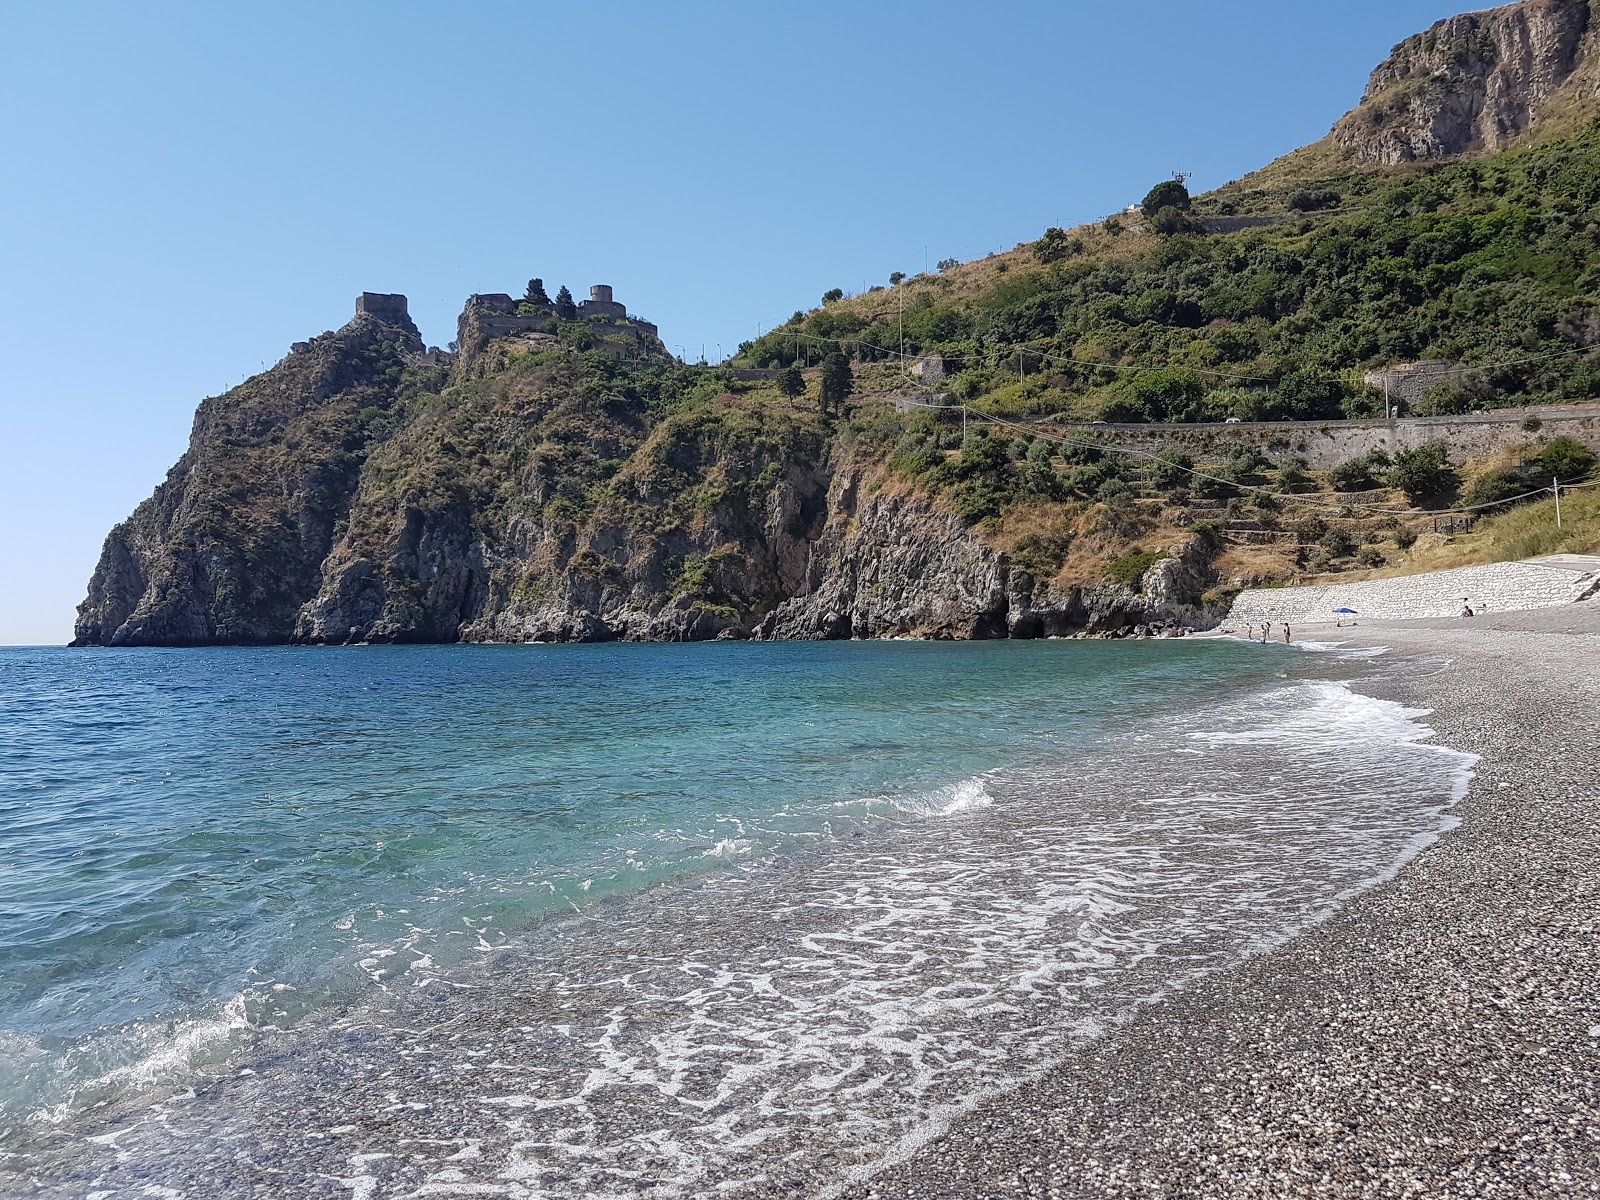 Sant'Alessio Siculo'in fotoğrafı geniş plaj ile birlikte